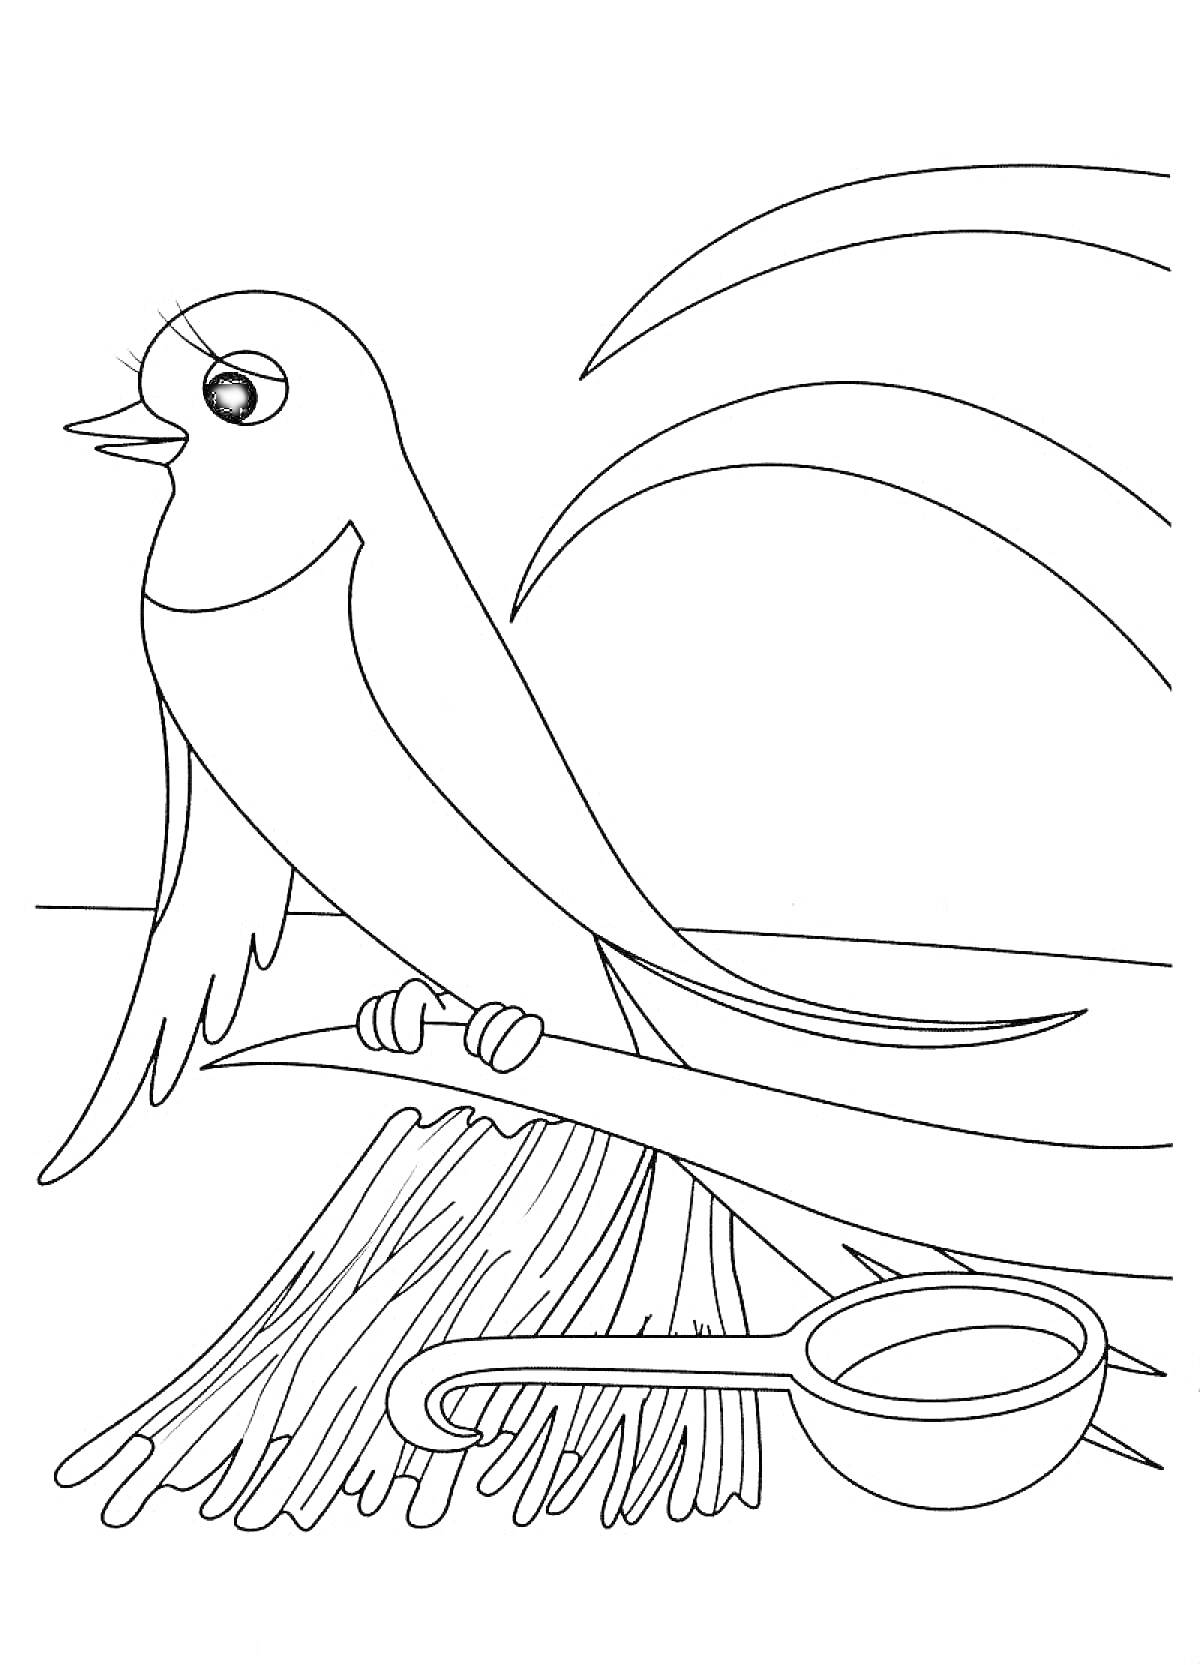 Ласточка на ветке над гнездом с веточками и круглой кормушкой